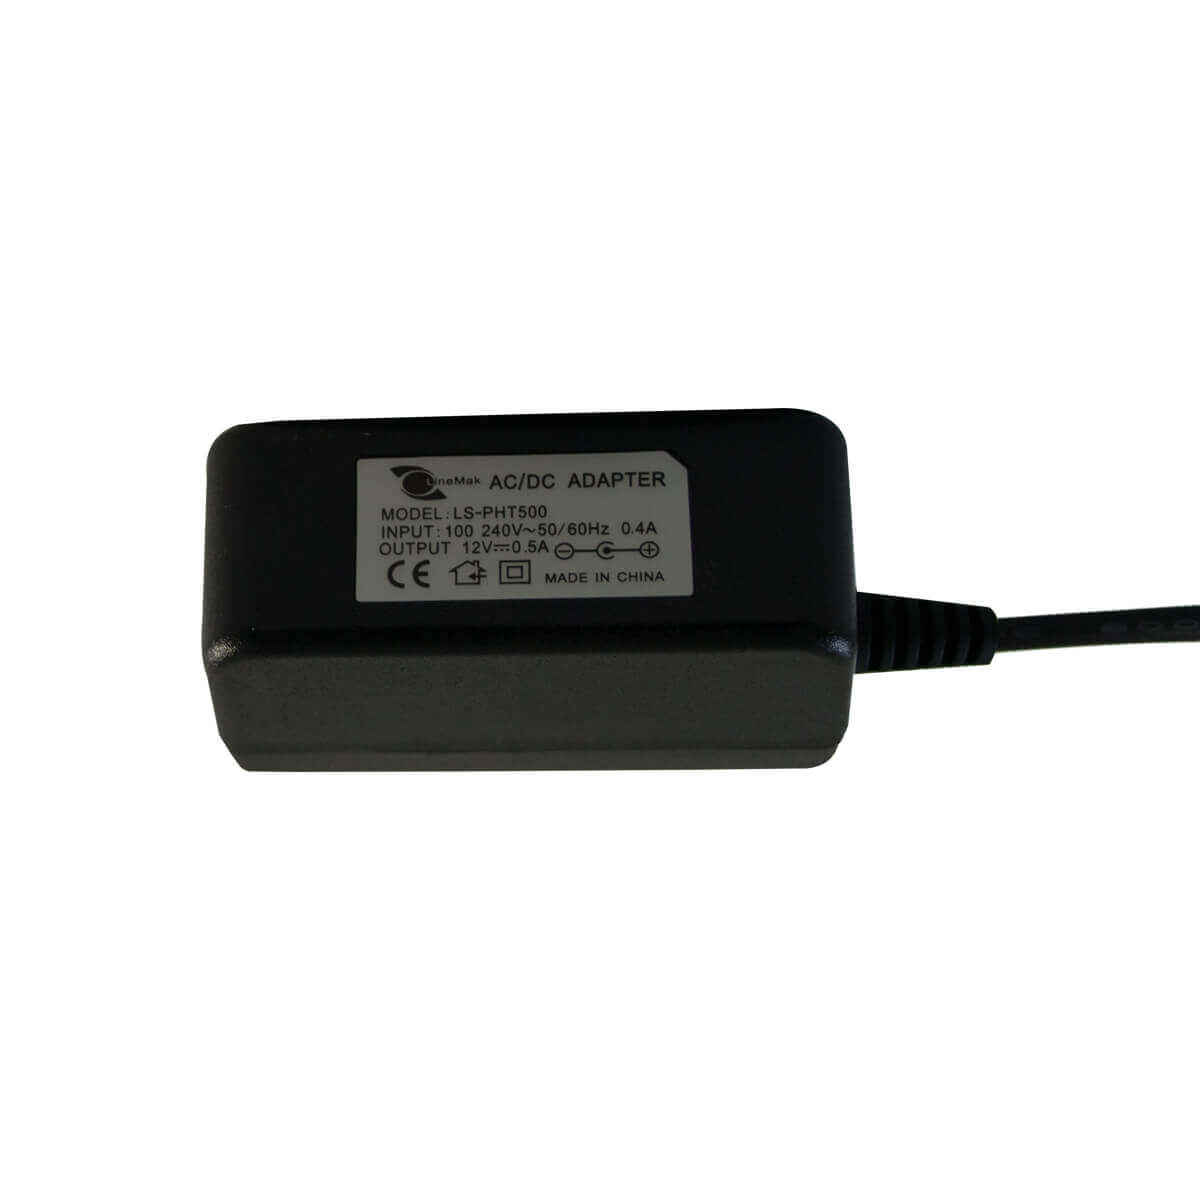 Fuente de poder DC12V 500mA con conector plug de 2.1mm, ideal para camaras de seguridad.